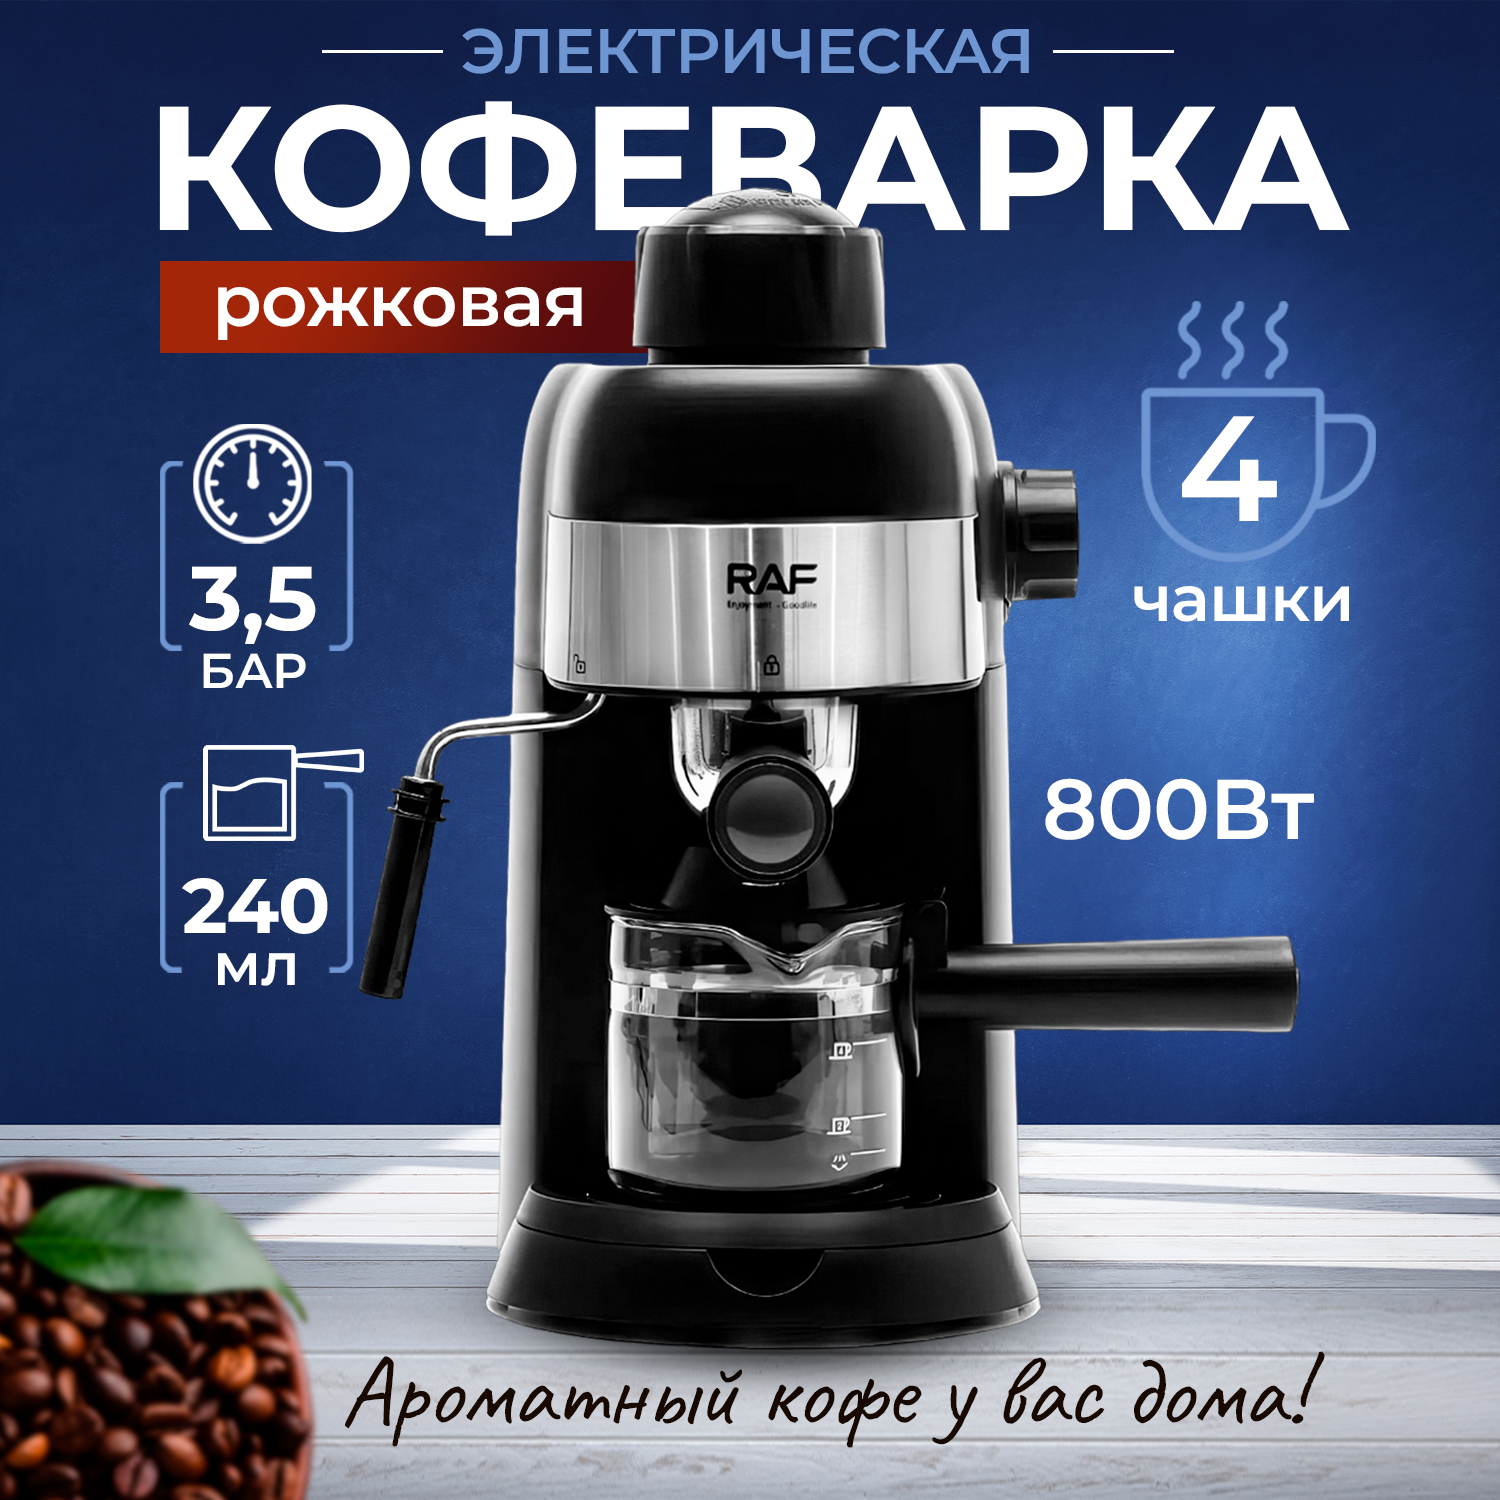 Рожковая кофеварка Raf R.133 черный, купить в Москве, цены в интернет-магазинах на Мегамаркет